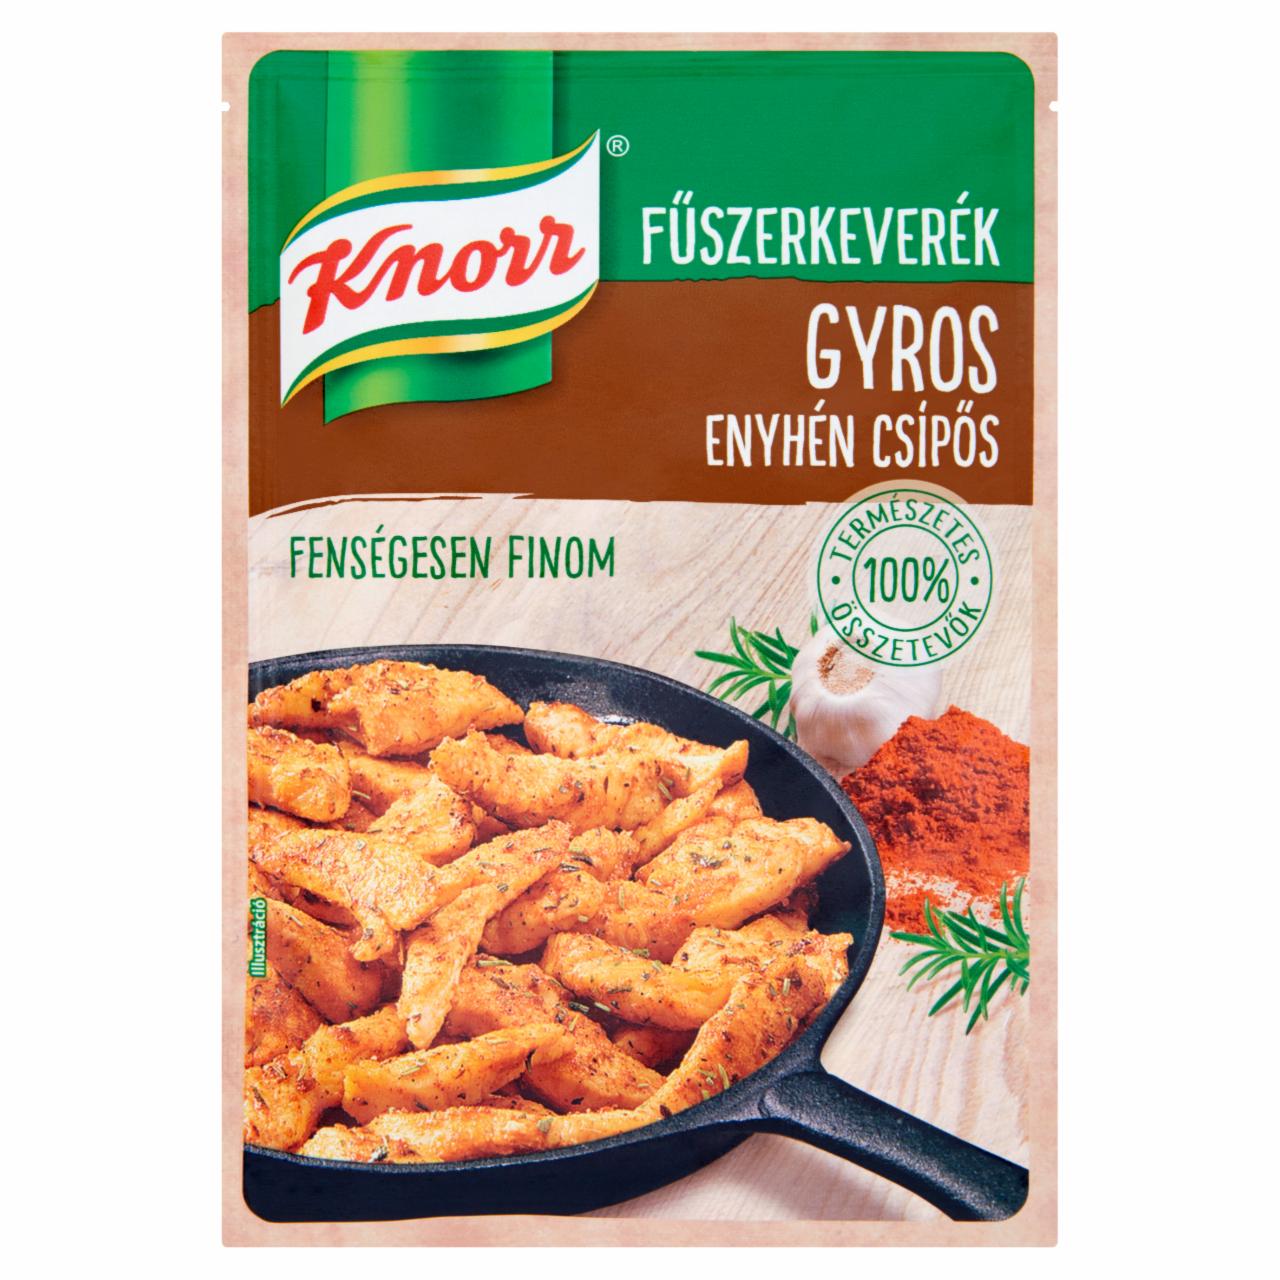 Képek - Knorr enyhén csípős gyros fűszerkeverék 35 g